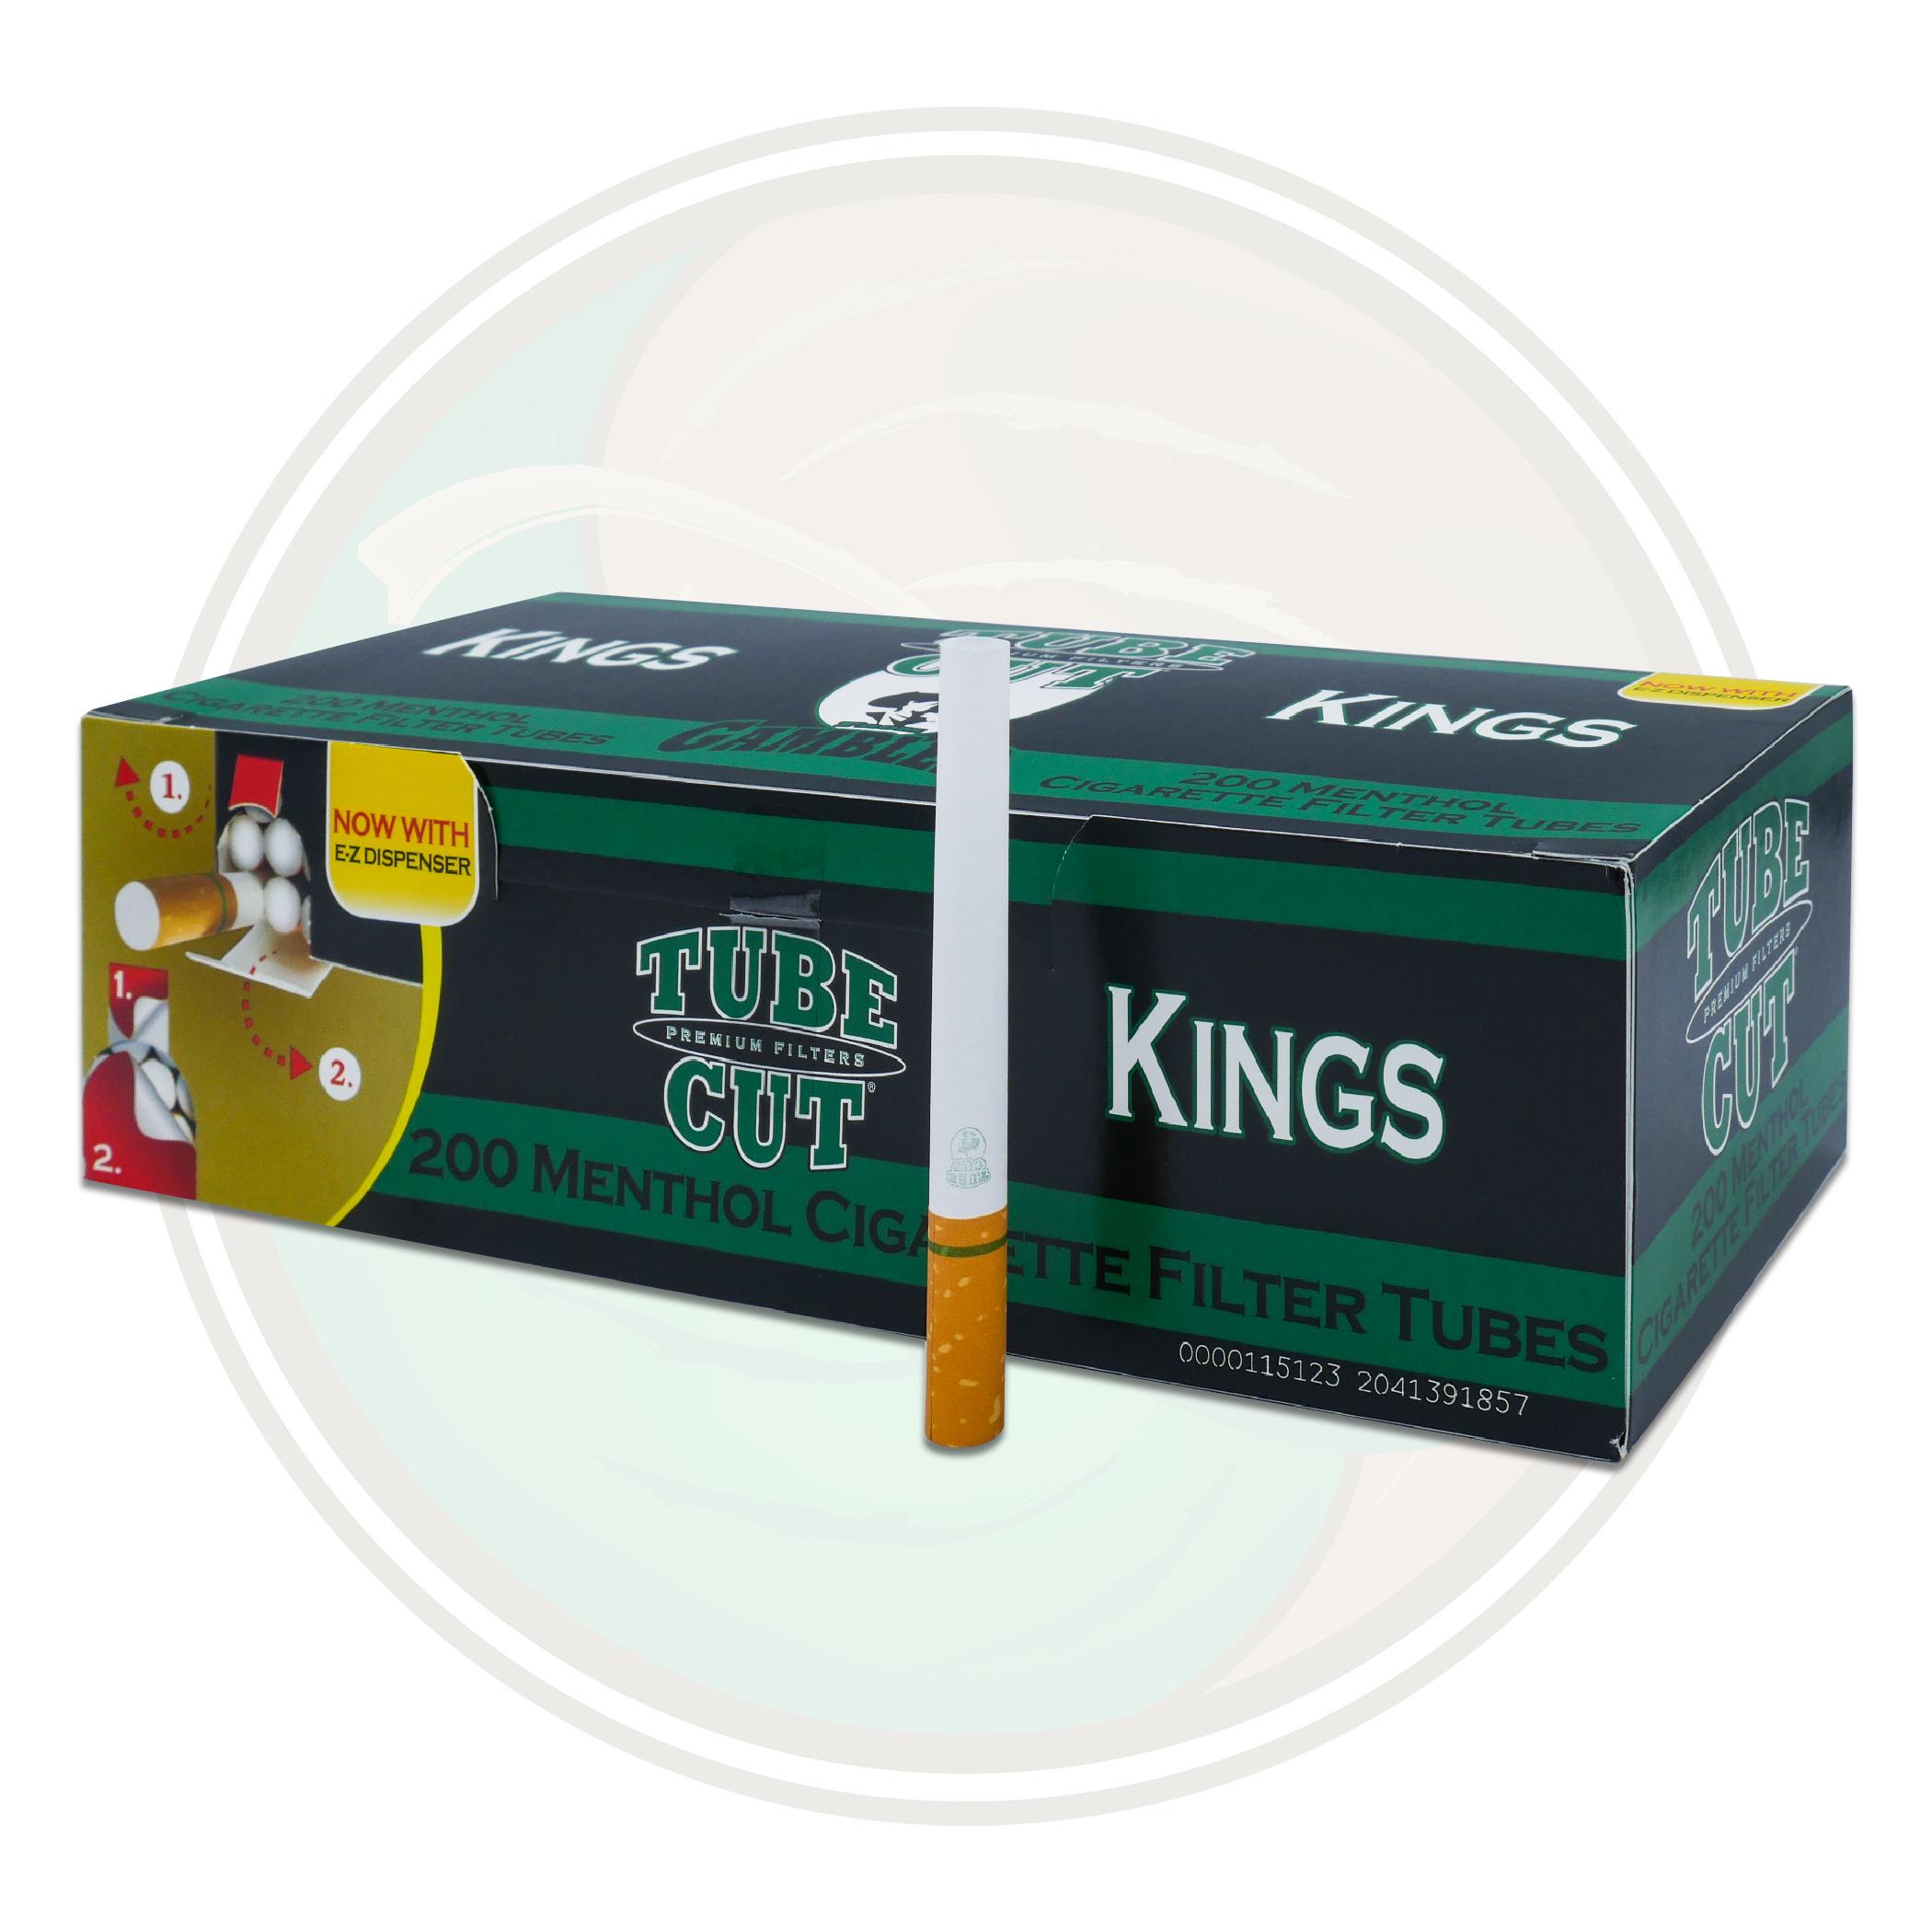  Top Menthol RYO Cigarette Tubes - King Size - Pre